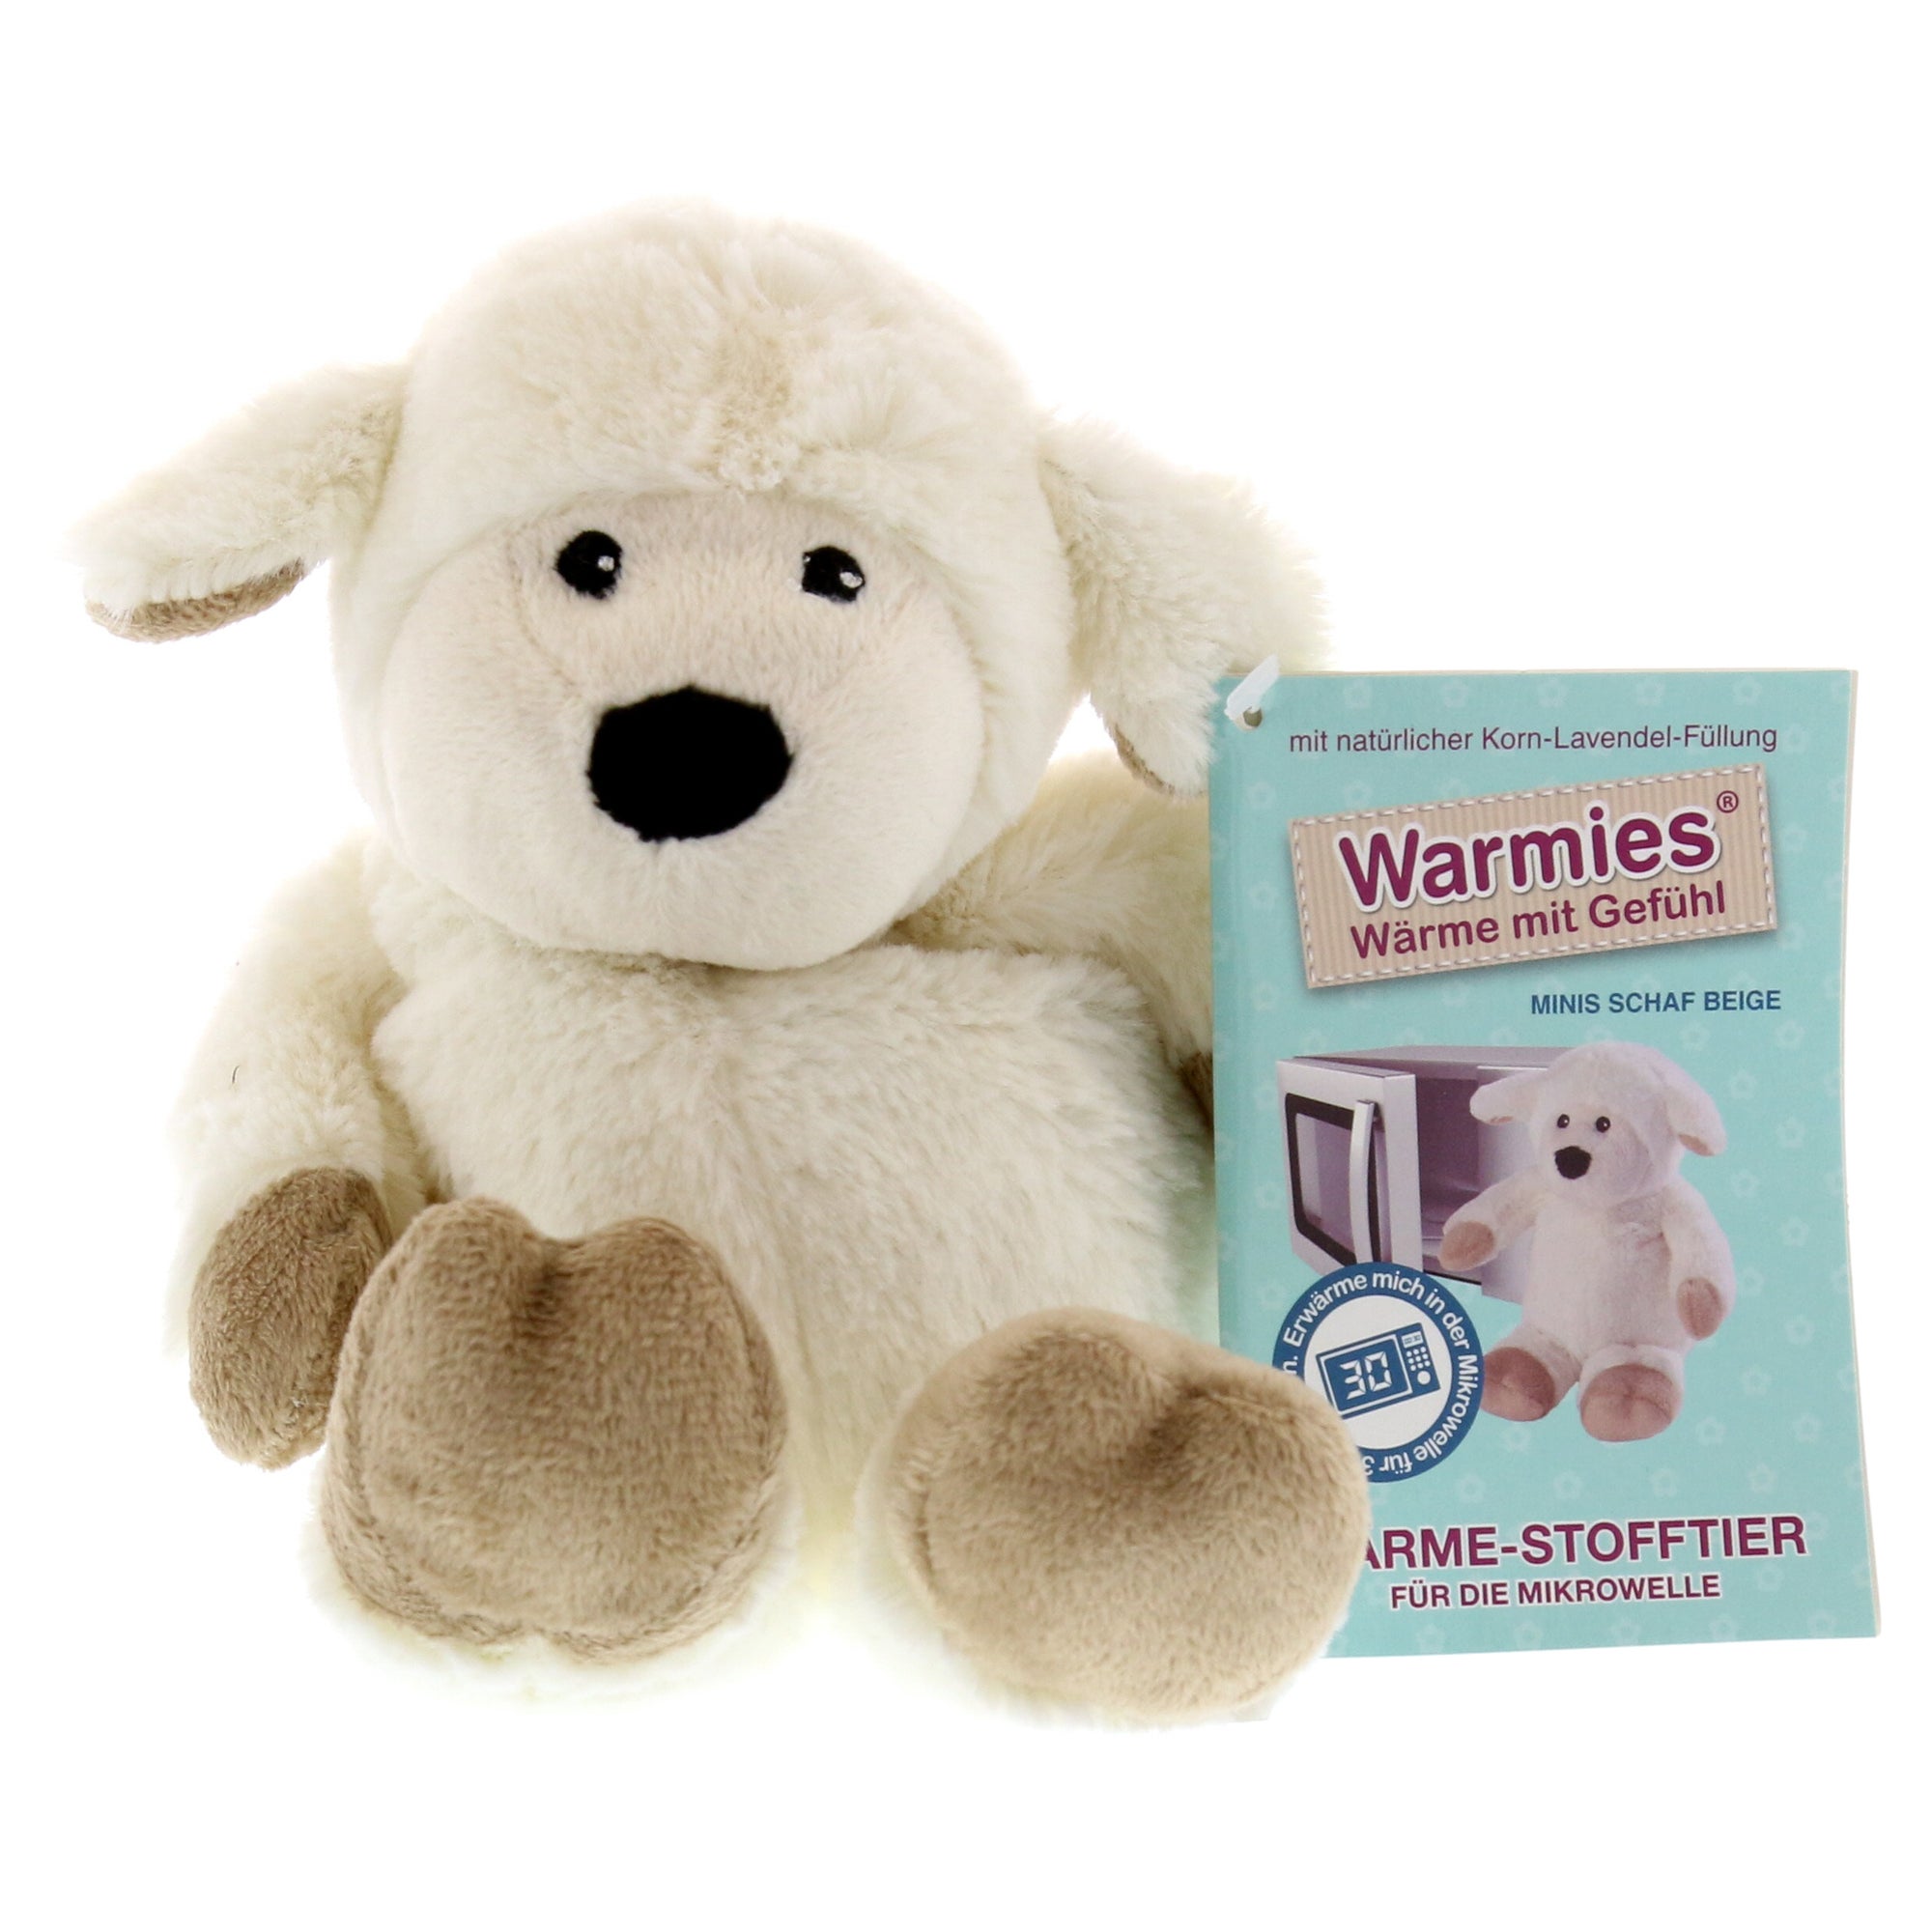 Warmies Minis Schaf beige, 1 St. online kaufen | DocMorris